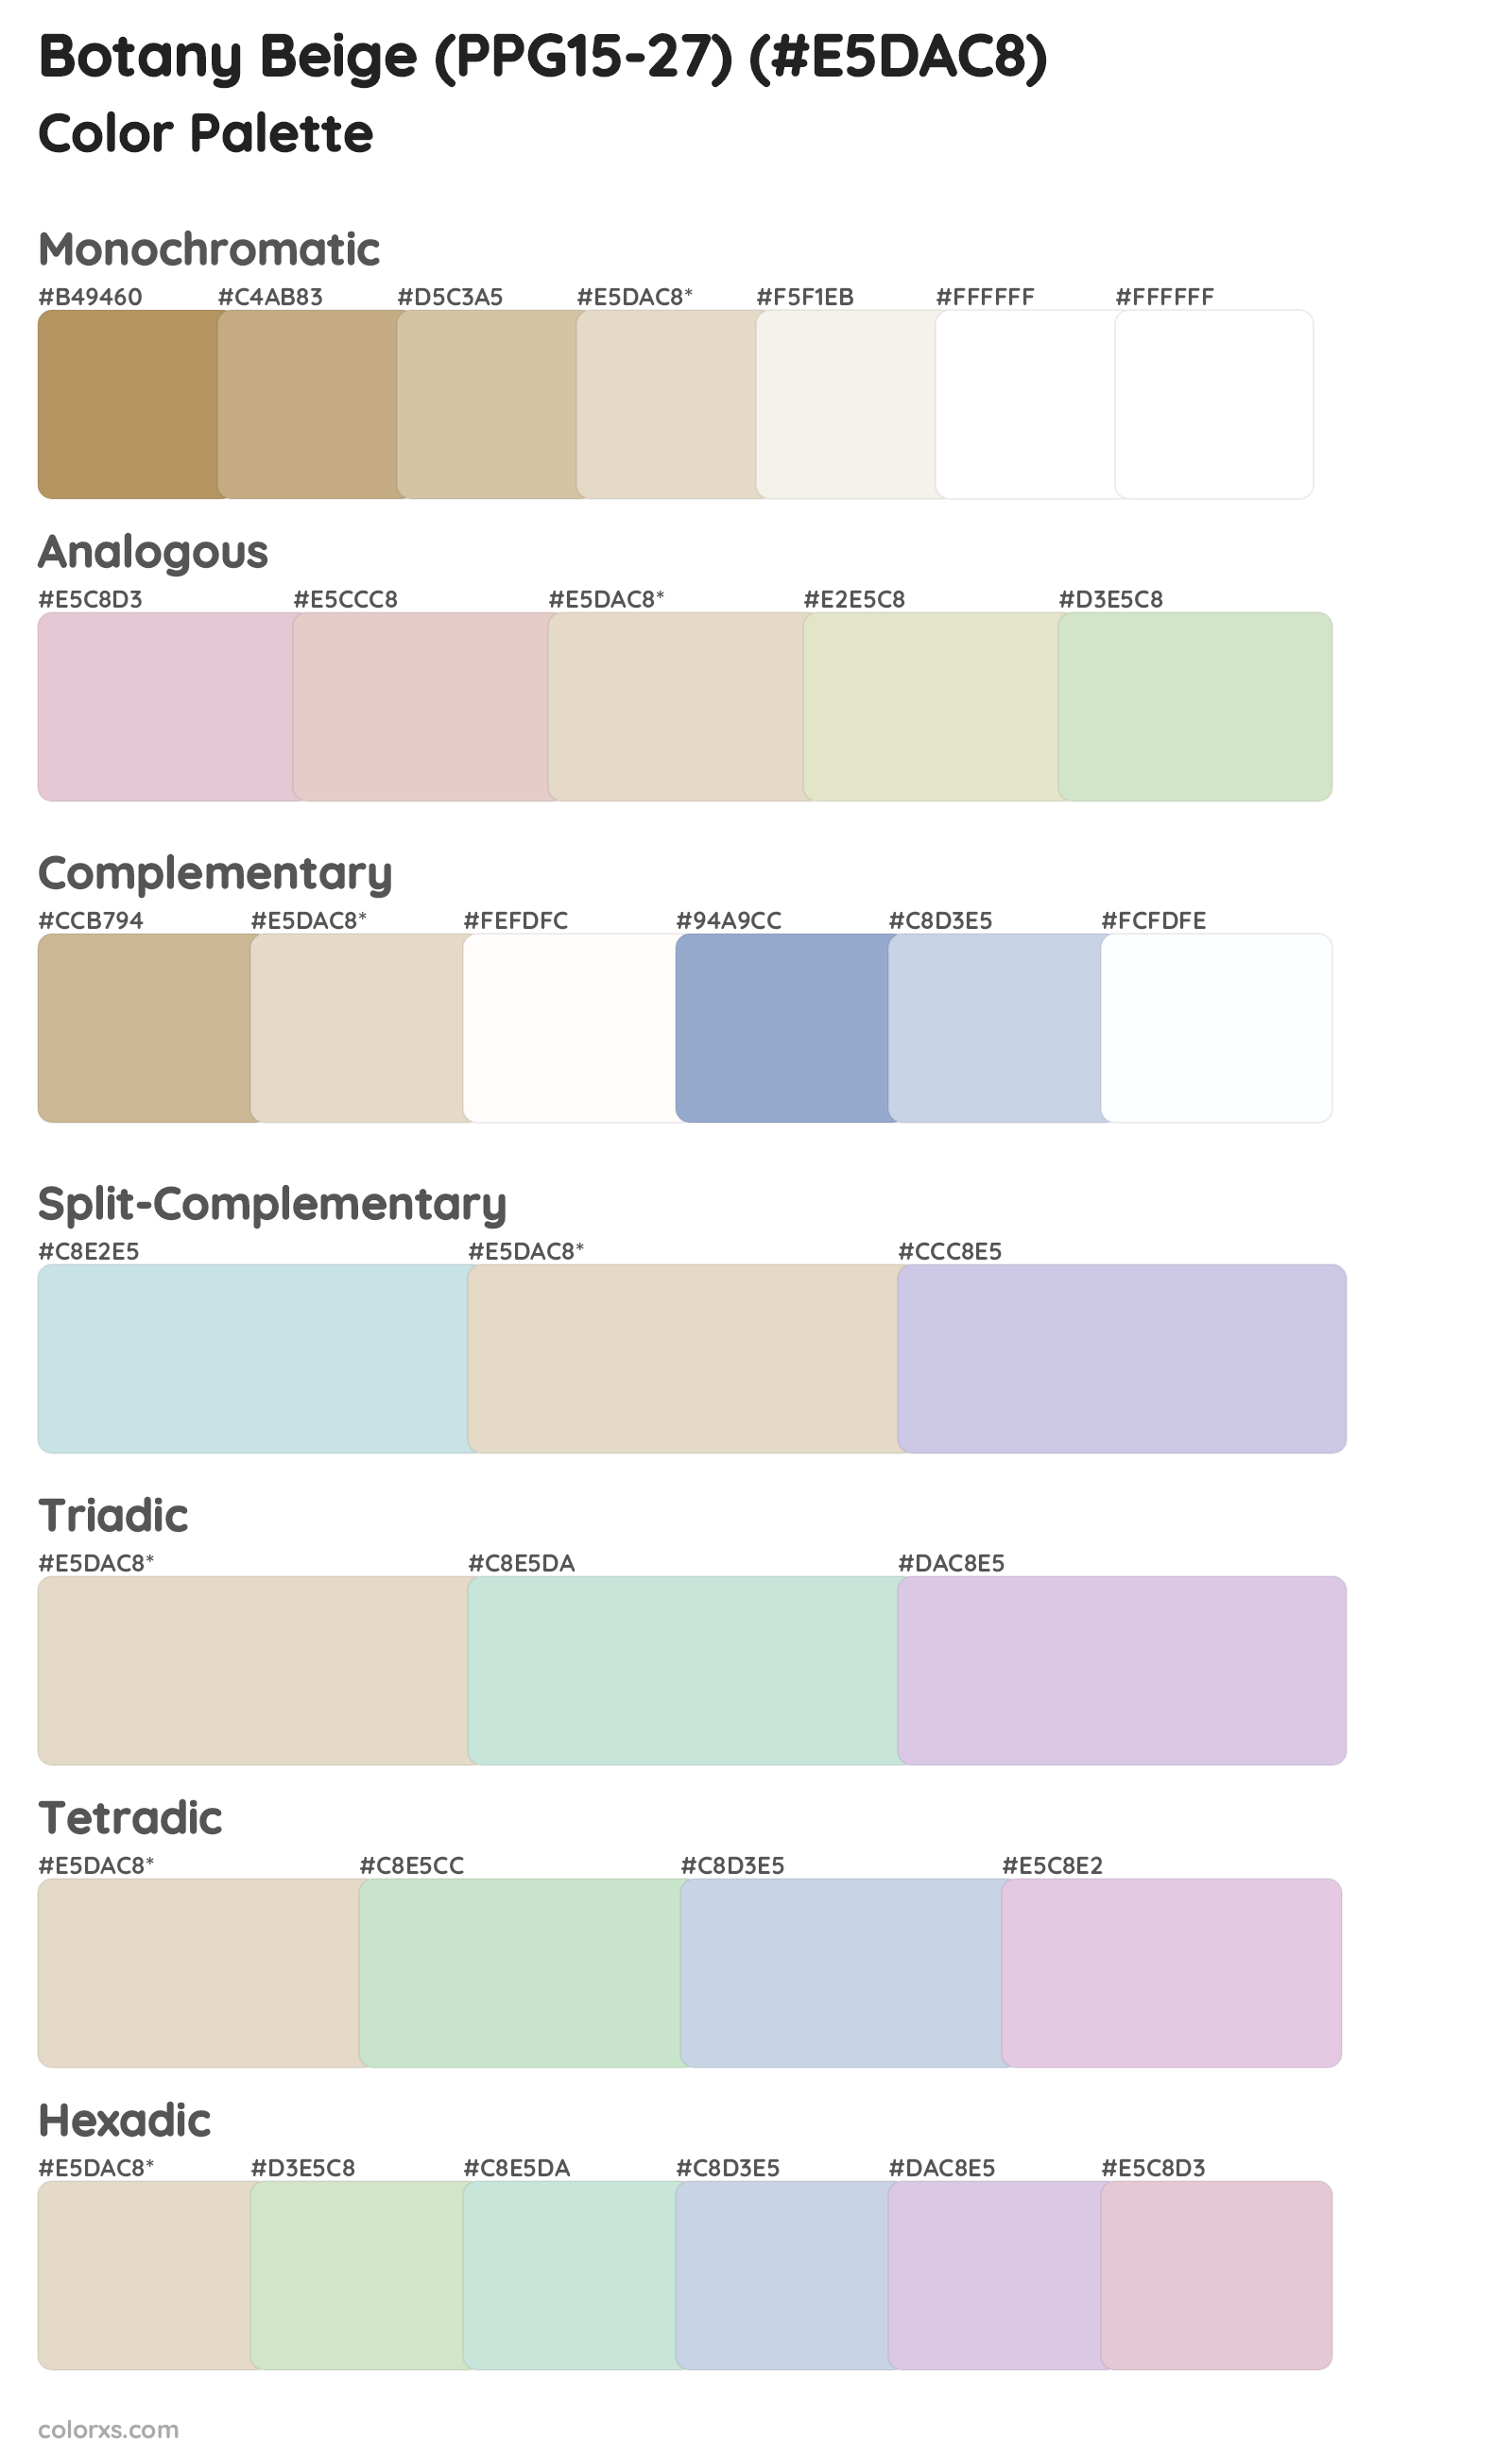 Botany Beige (PPG15-27) Color Scheme Palettes